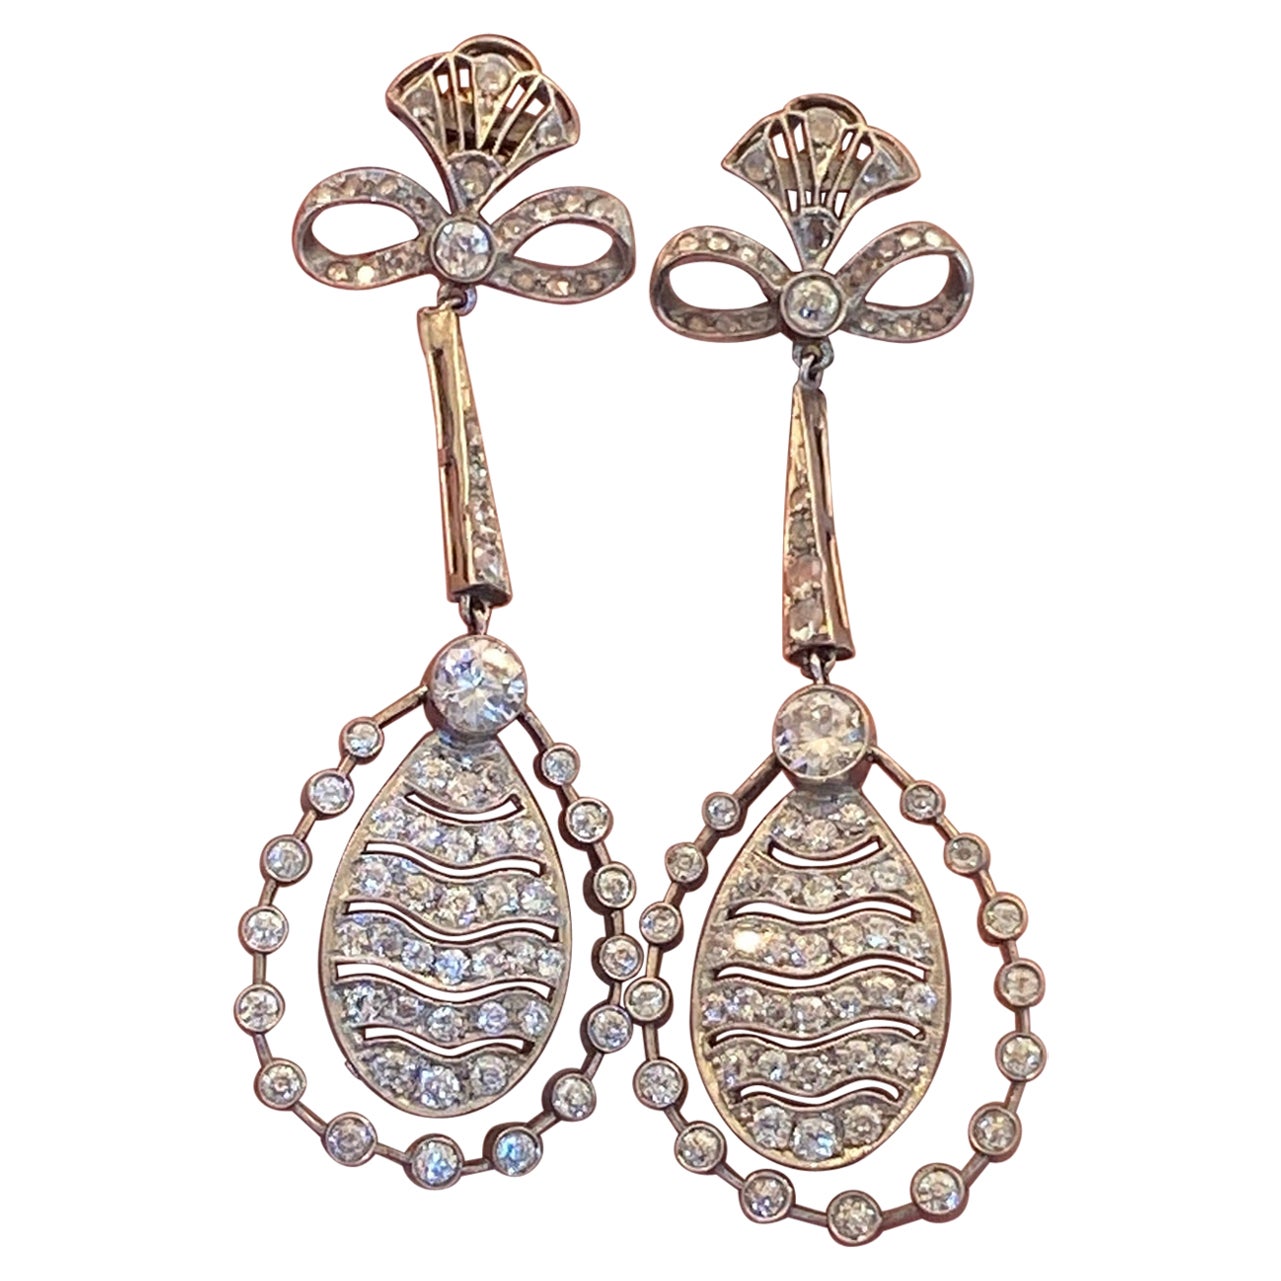 Art Deco Chandelier Diamond Earrings